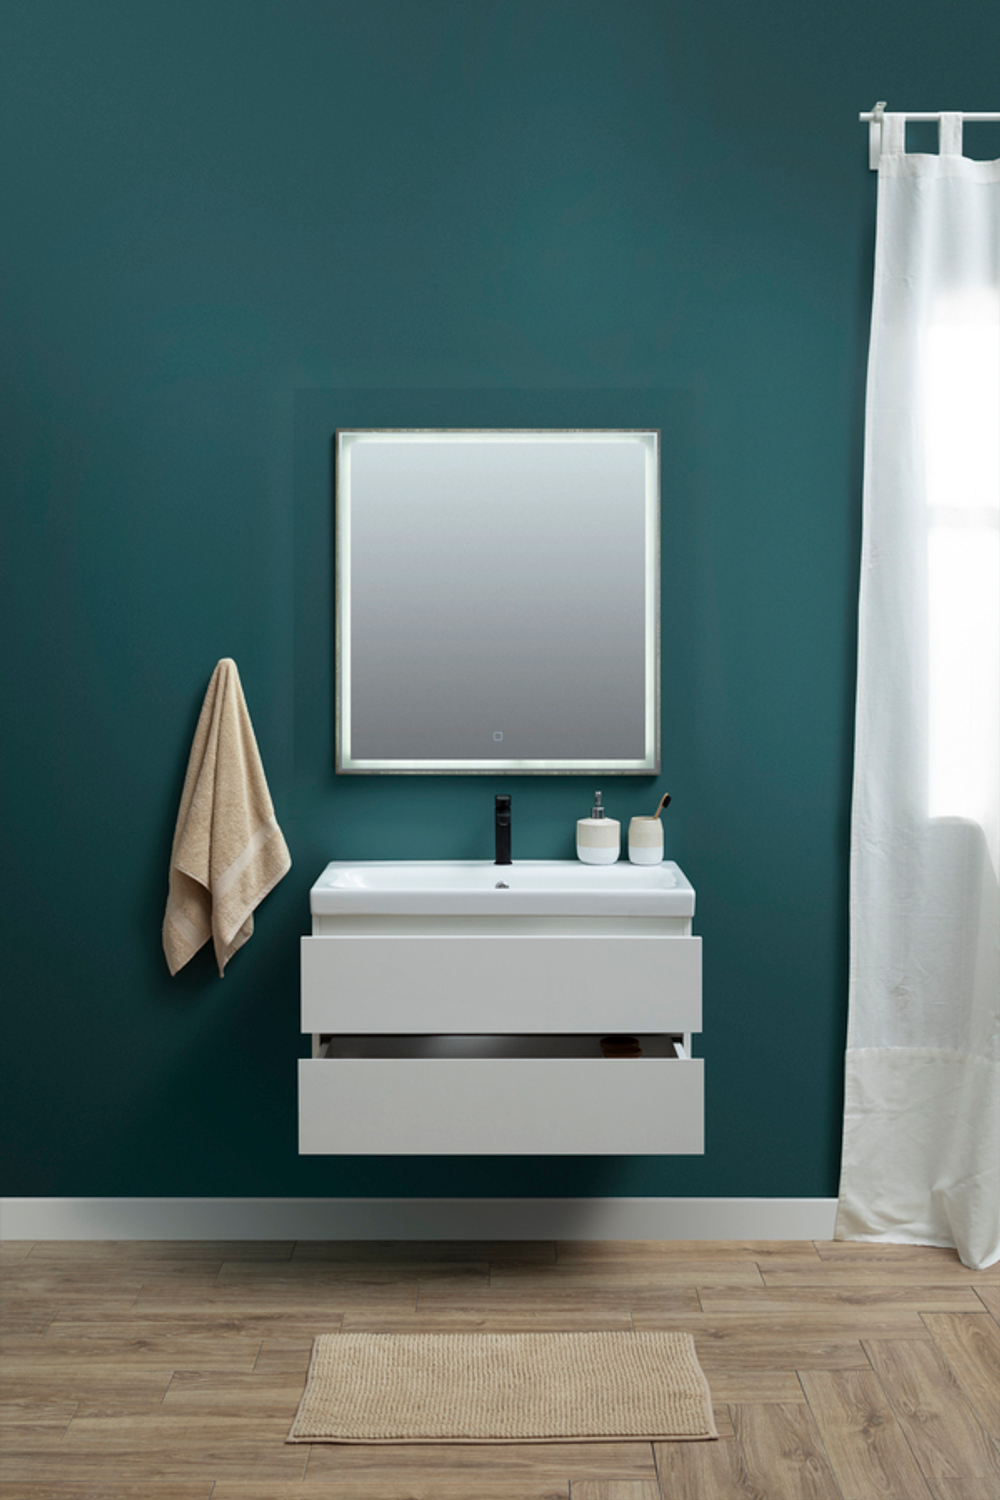 Мебель для ванной Aquanet Беркли 80 белый/дуб рошелье (зеркало дуб рошелье)